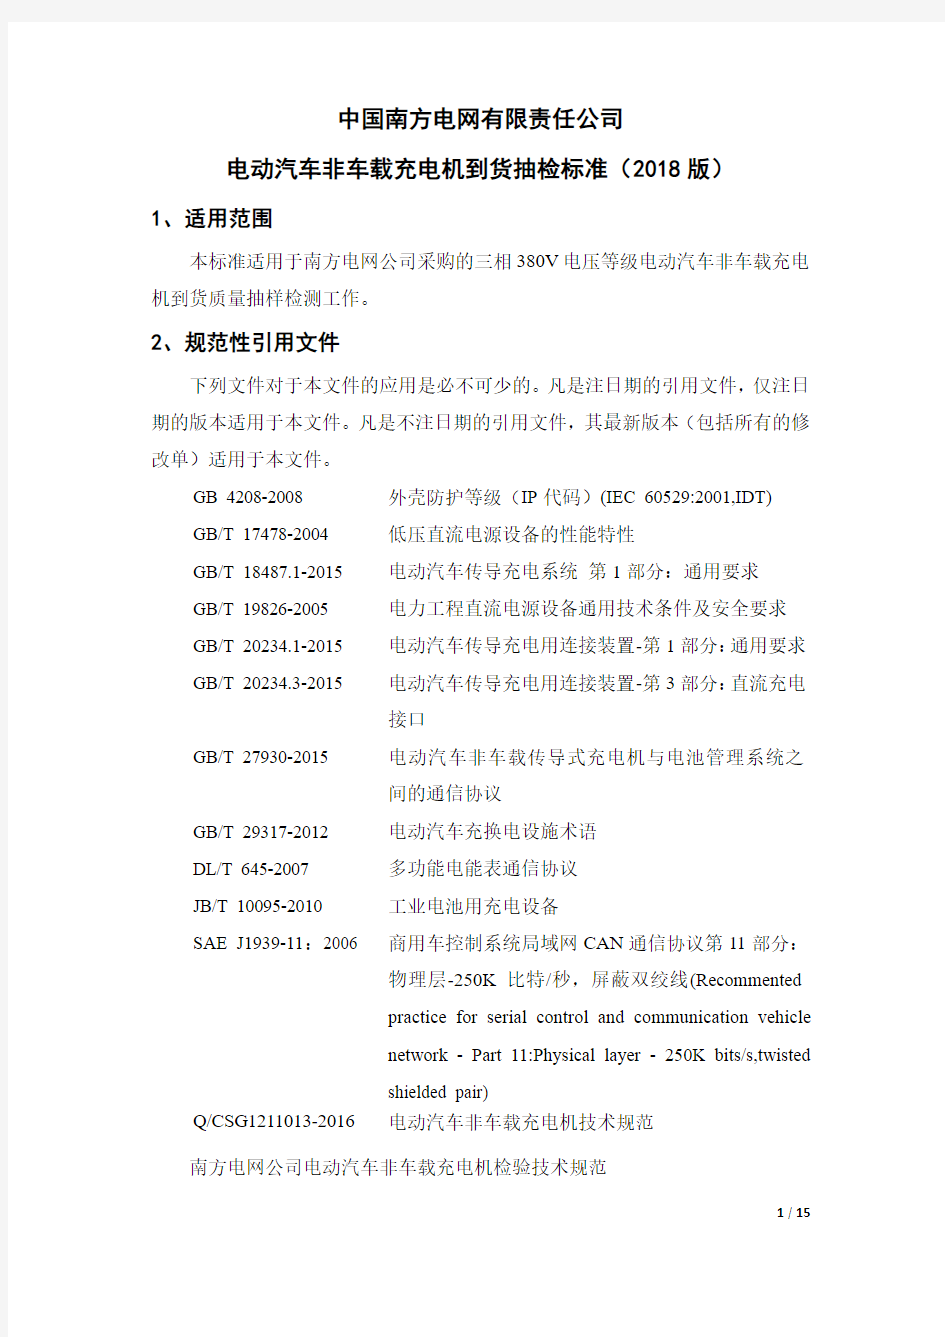 中国南方电网有限责任公司电动汽车非车载充电机到货抽检标准(2018版)